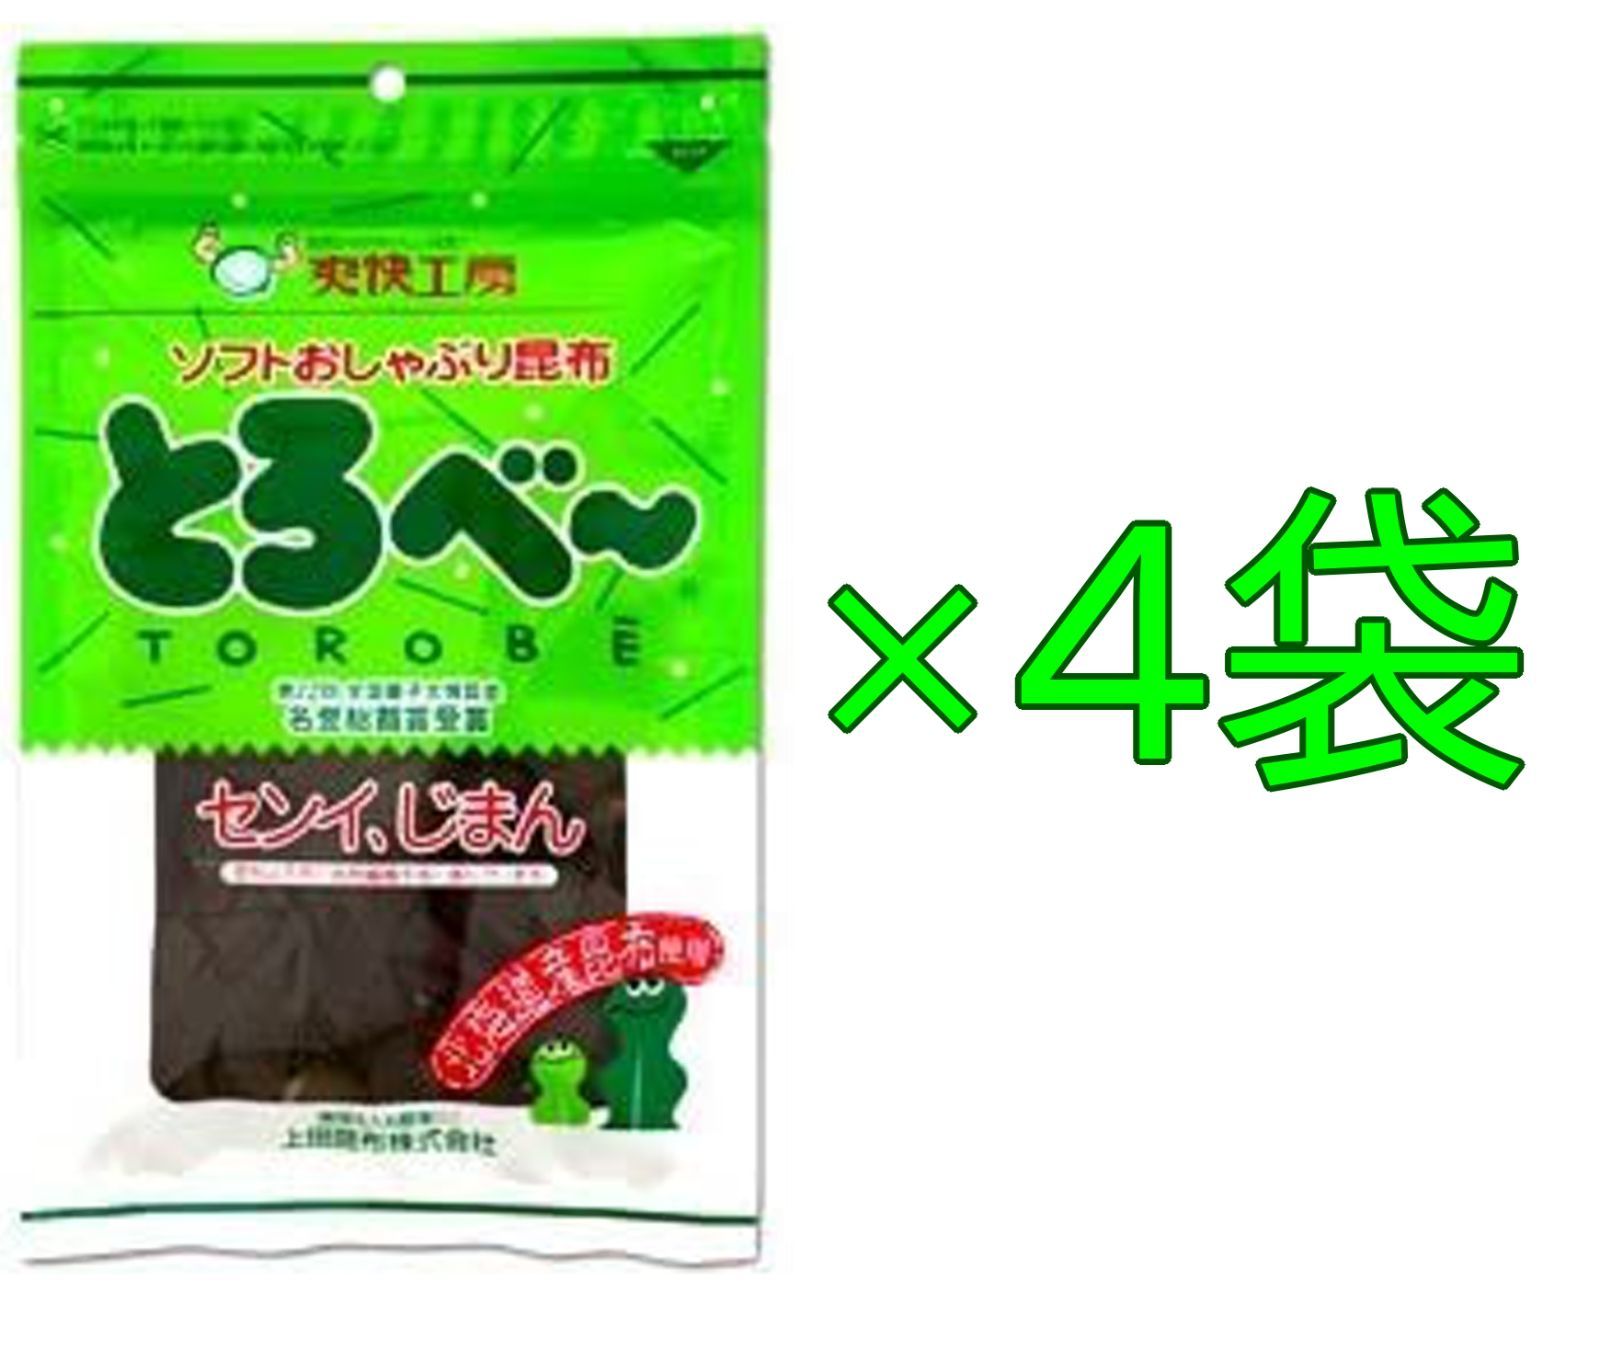 メルカリShops - 上田昆布 ソフトおしゃぶり昆布 とろべー 22g×4袋